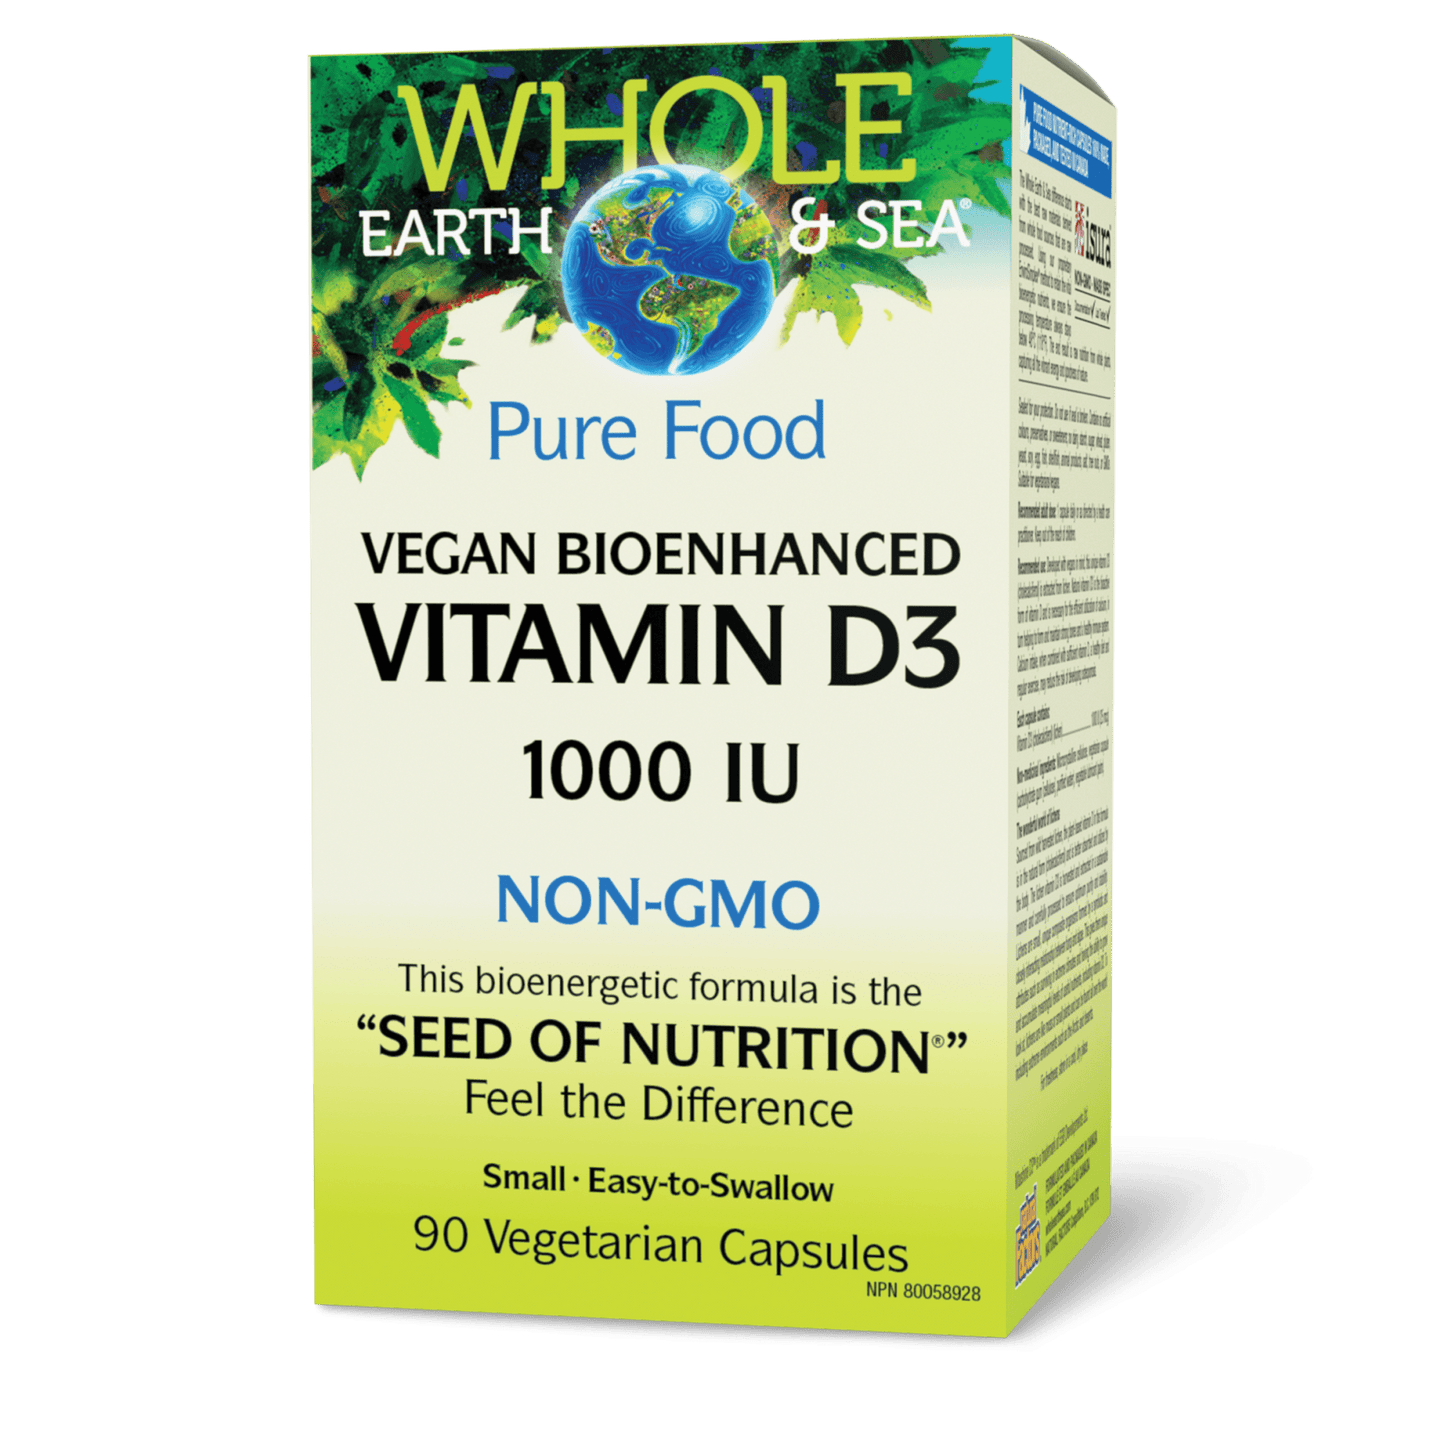 Vegan Bioenhanced Vitamin D3 1000 IU, Whole Earth & Sea, Whole Earth & Sea®|v|image|35512